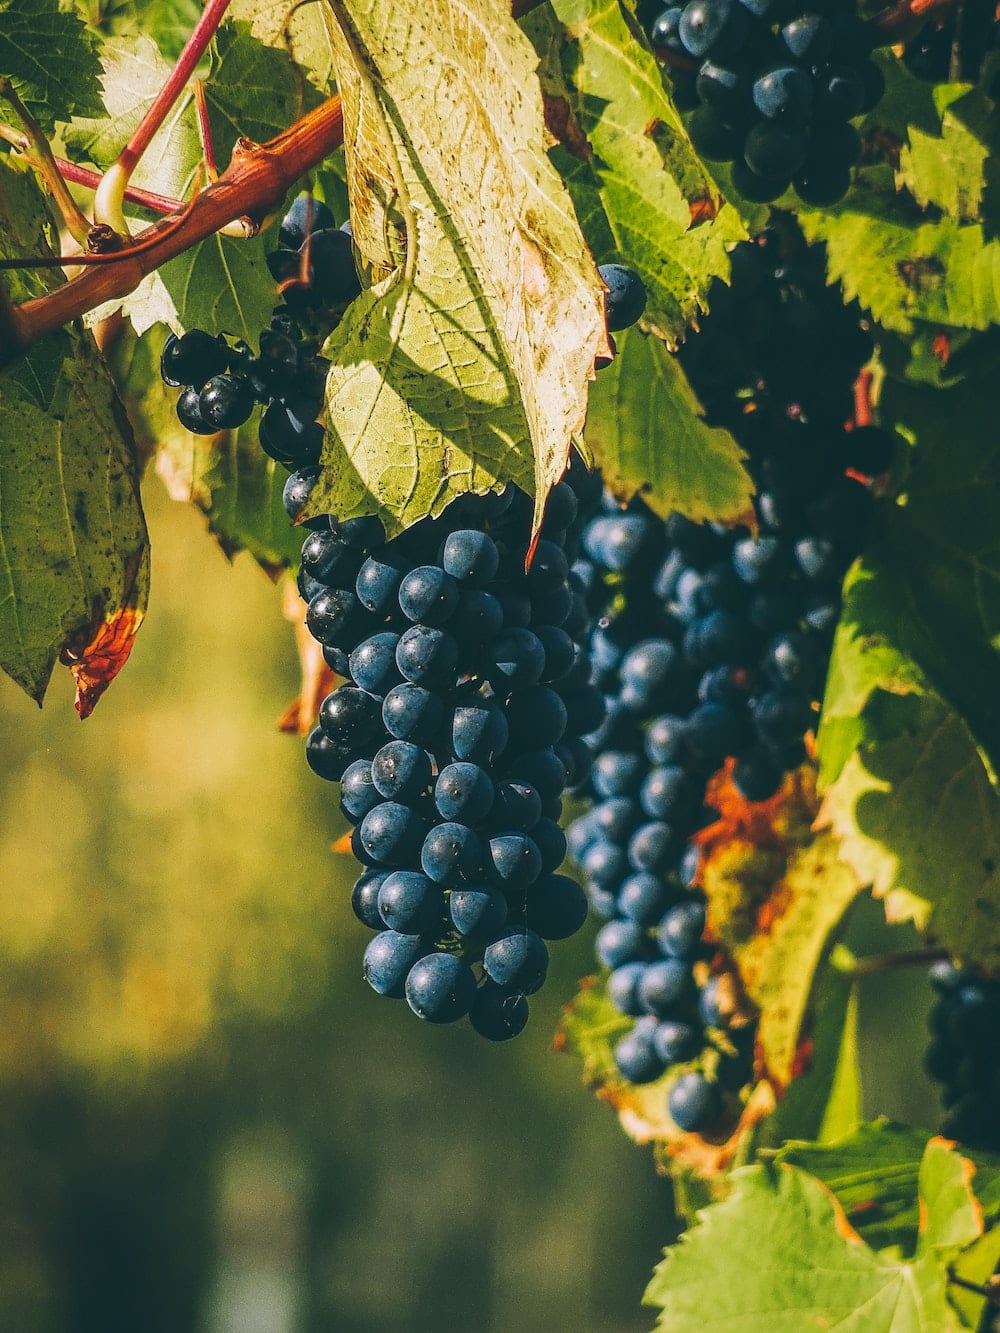 WEINBERGE Impressionen Rotwein Weintrauben geruch Duft